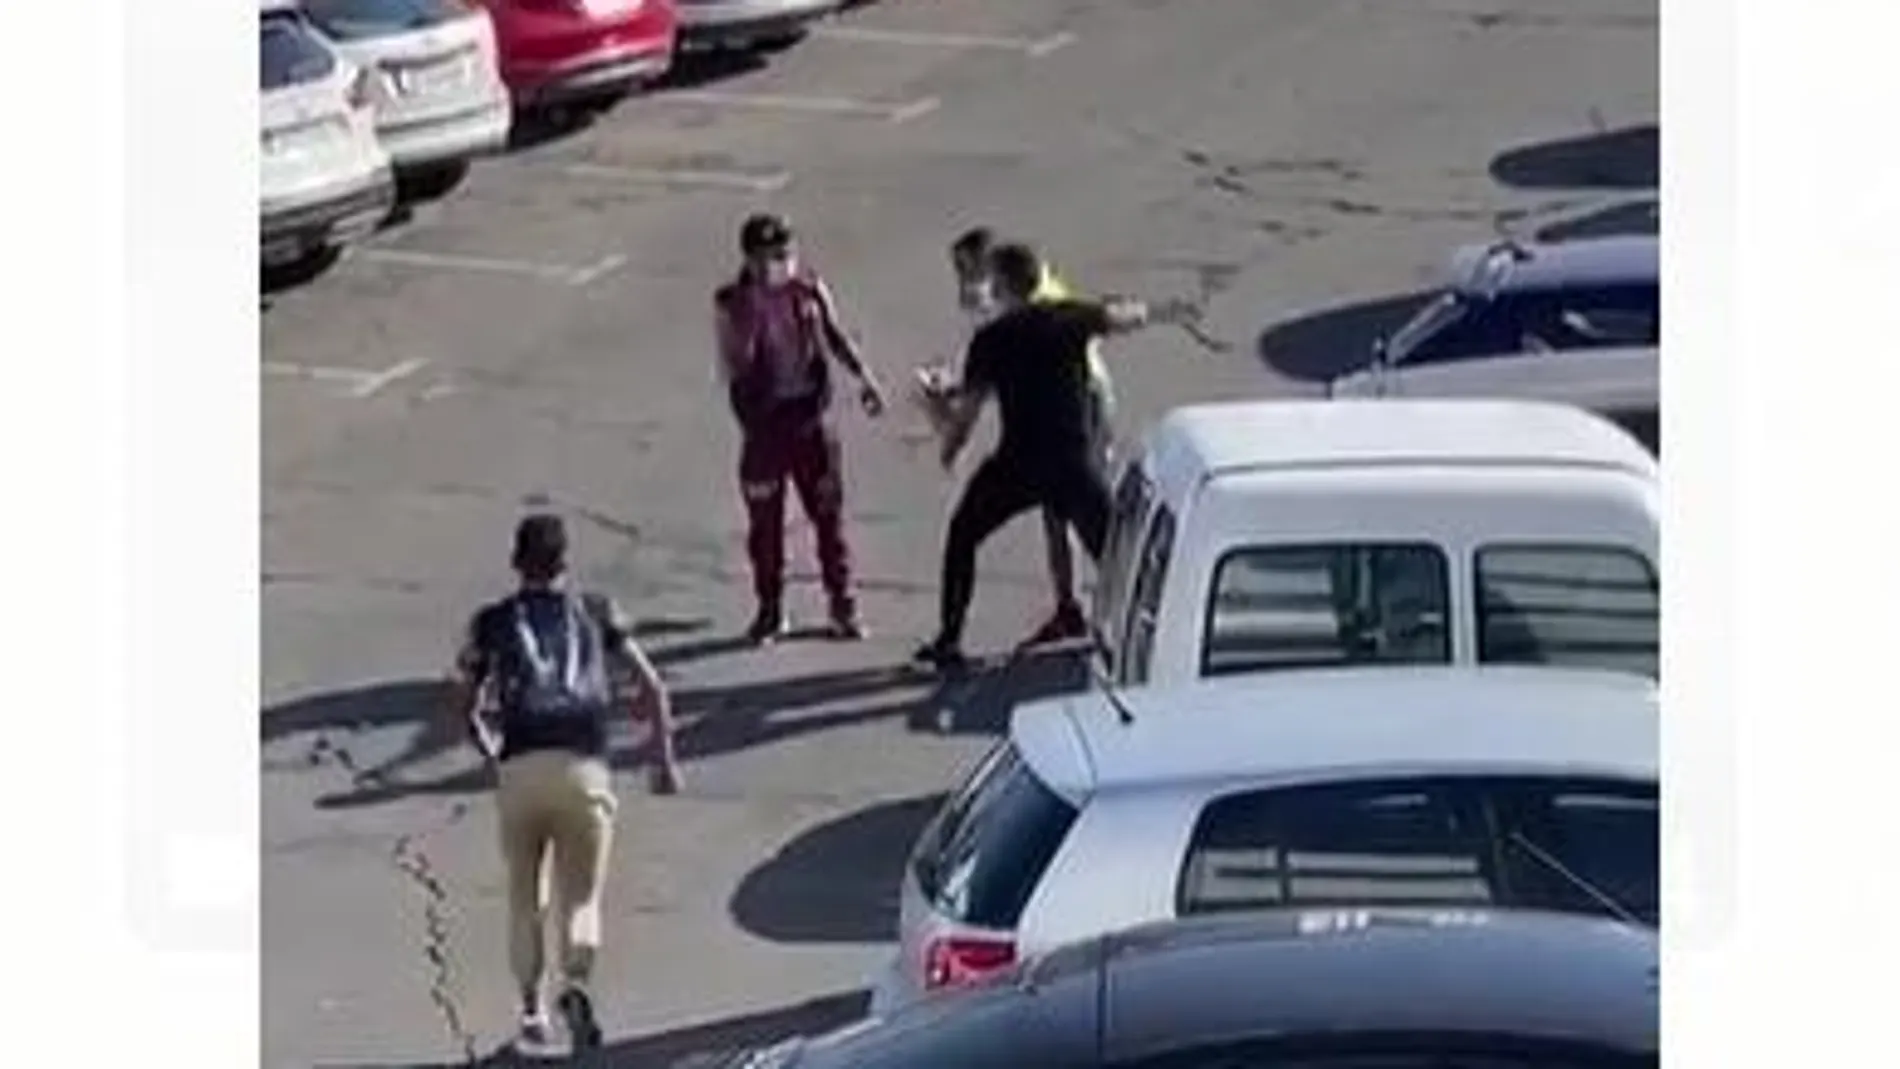 Captura del vídeo de la agresión publicado en LA RAZÓN